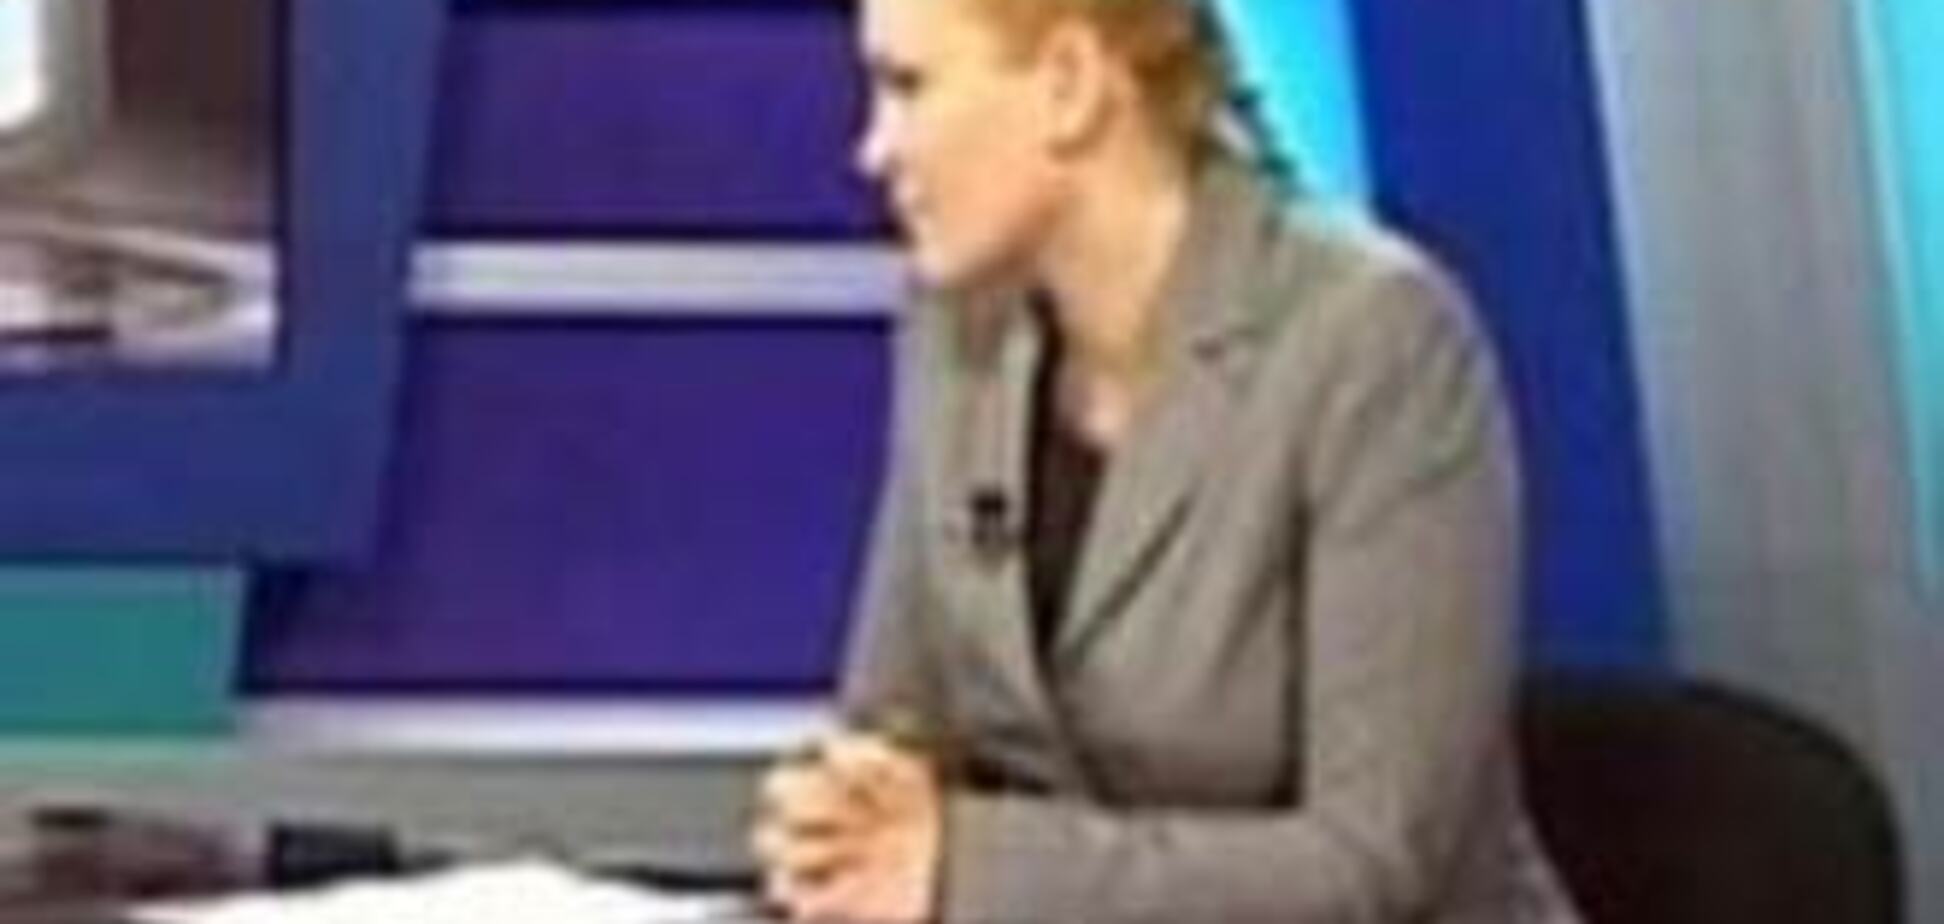 Одесская телеведущая расплакалась в прямом эфире